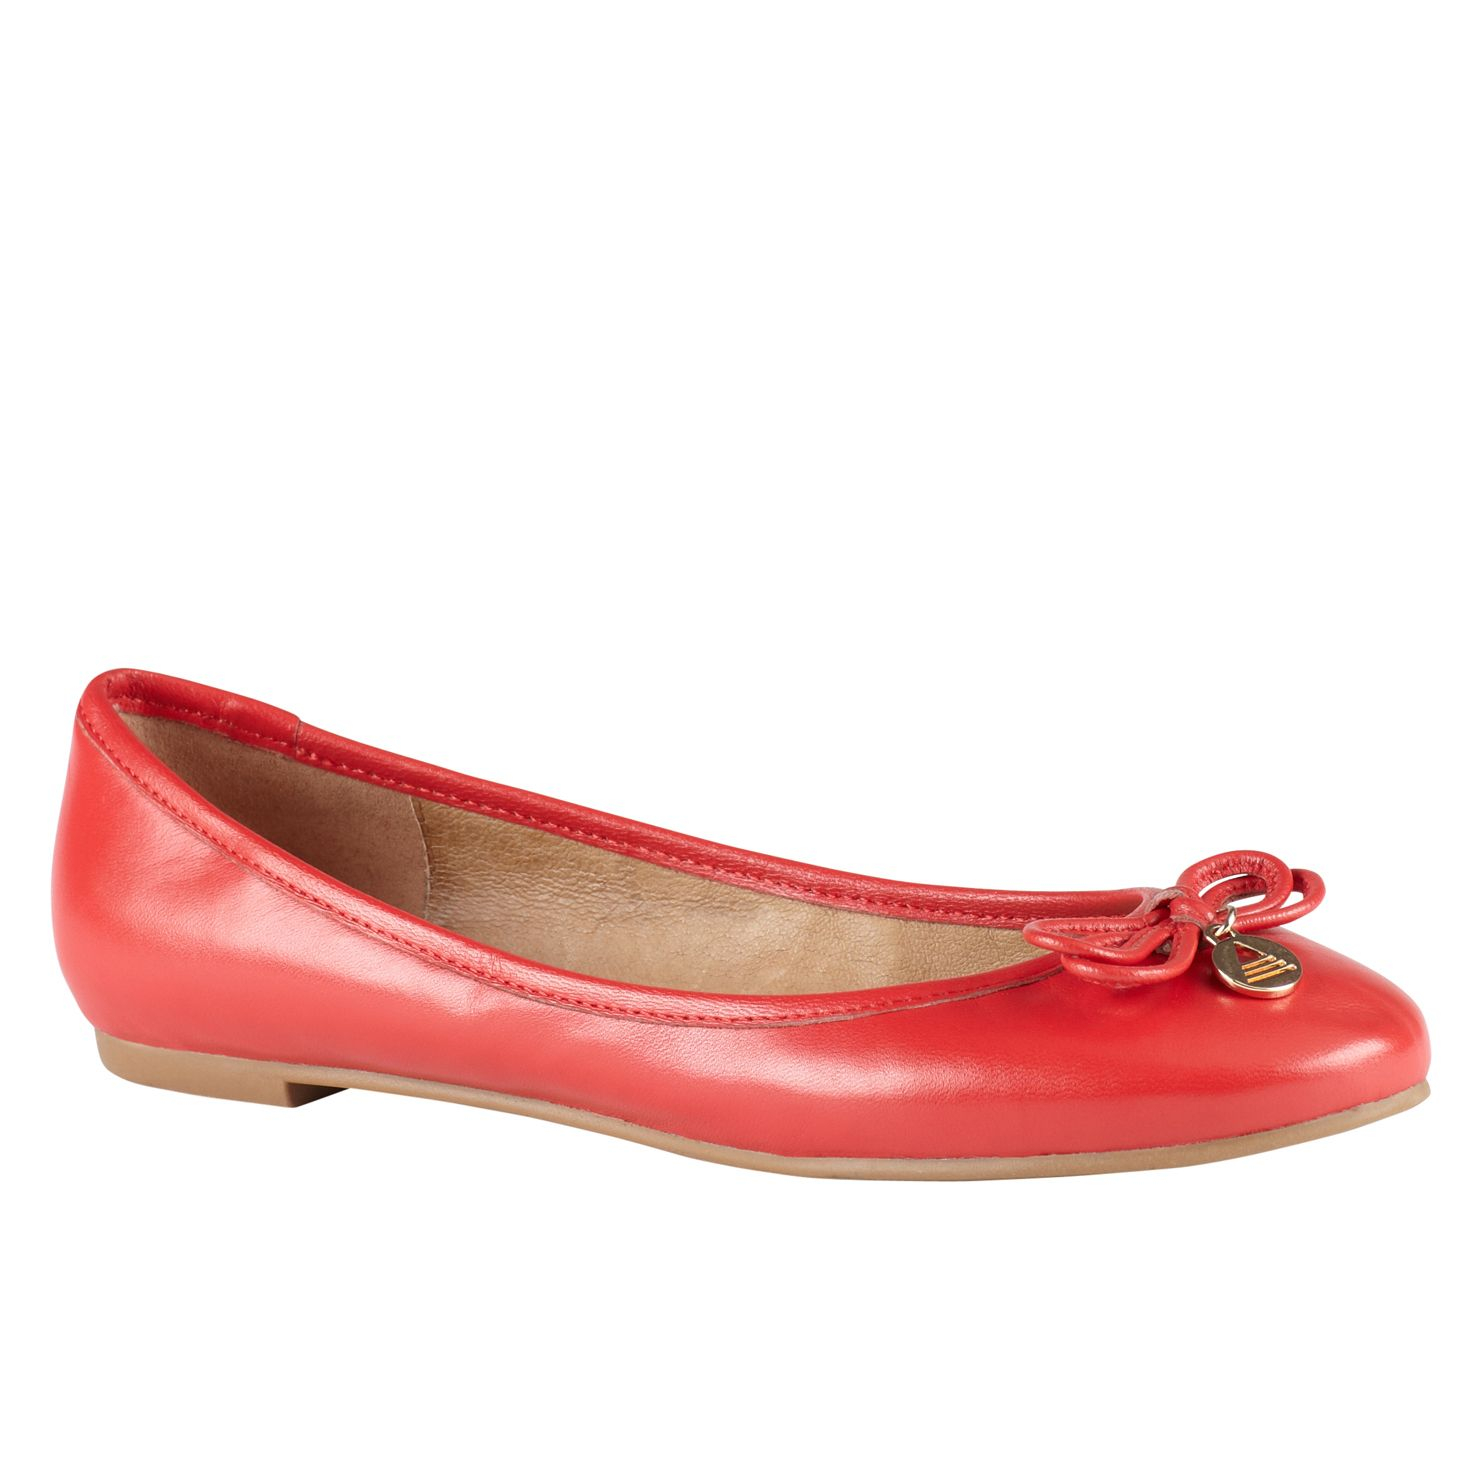 Aldo Qeirwen Ballerina Pump Shoes in Red | Lyst